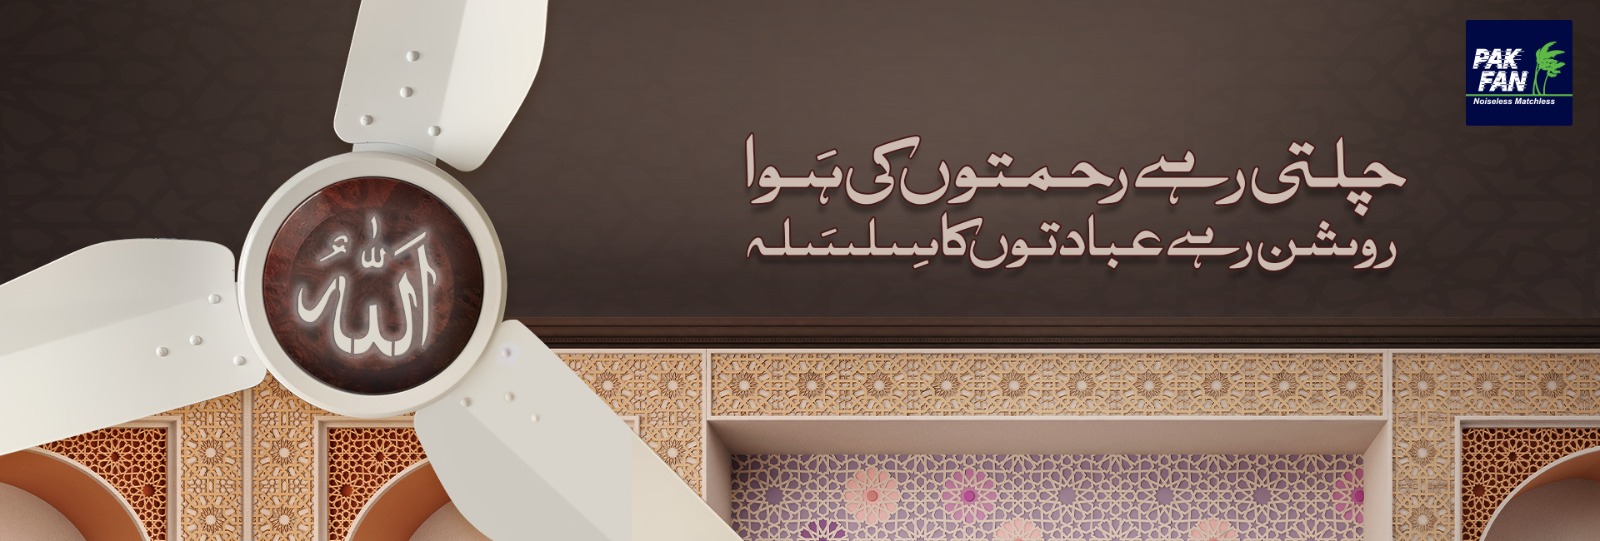 Website Banner (Islamic Light Fan)